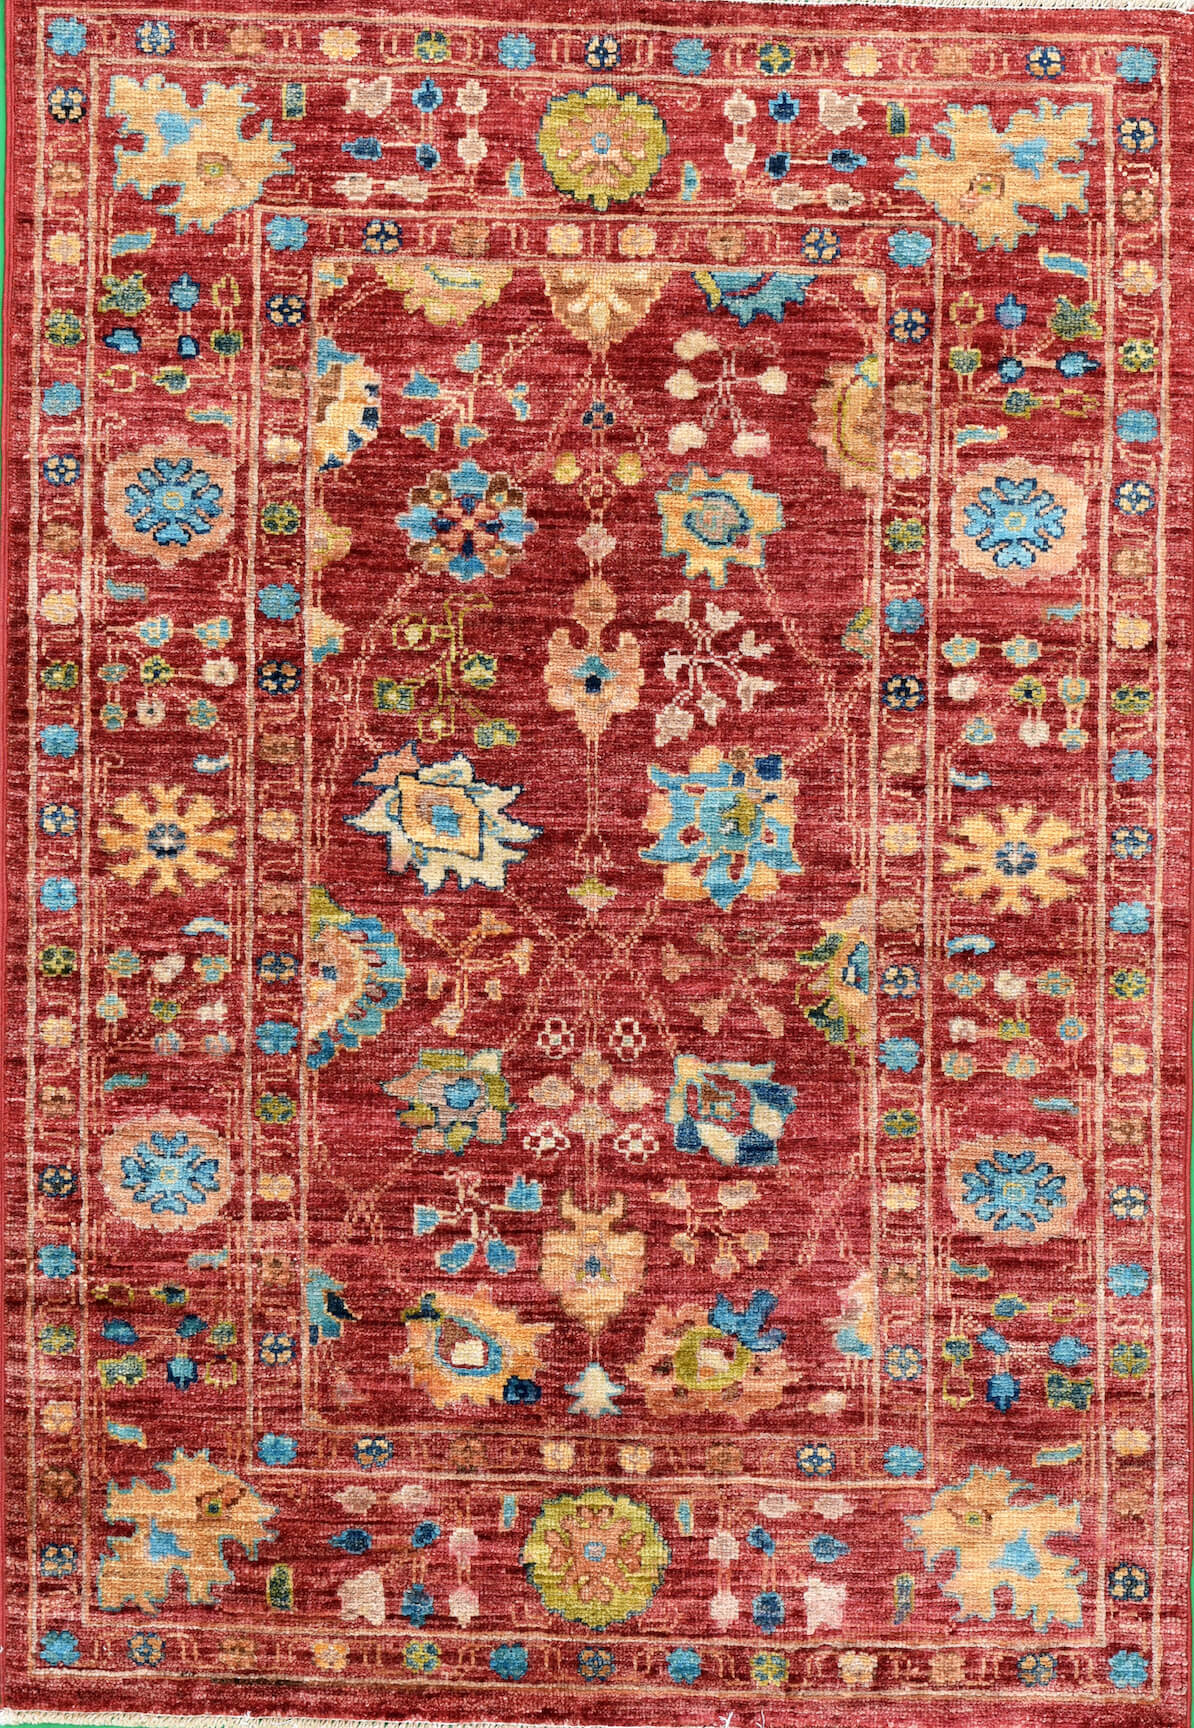 Afghanischer Teppich Rubin Red, reine Schurwolle, handgeknüpft, rotgrundig/mehrfarbig, Draufsicht